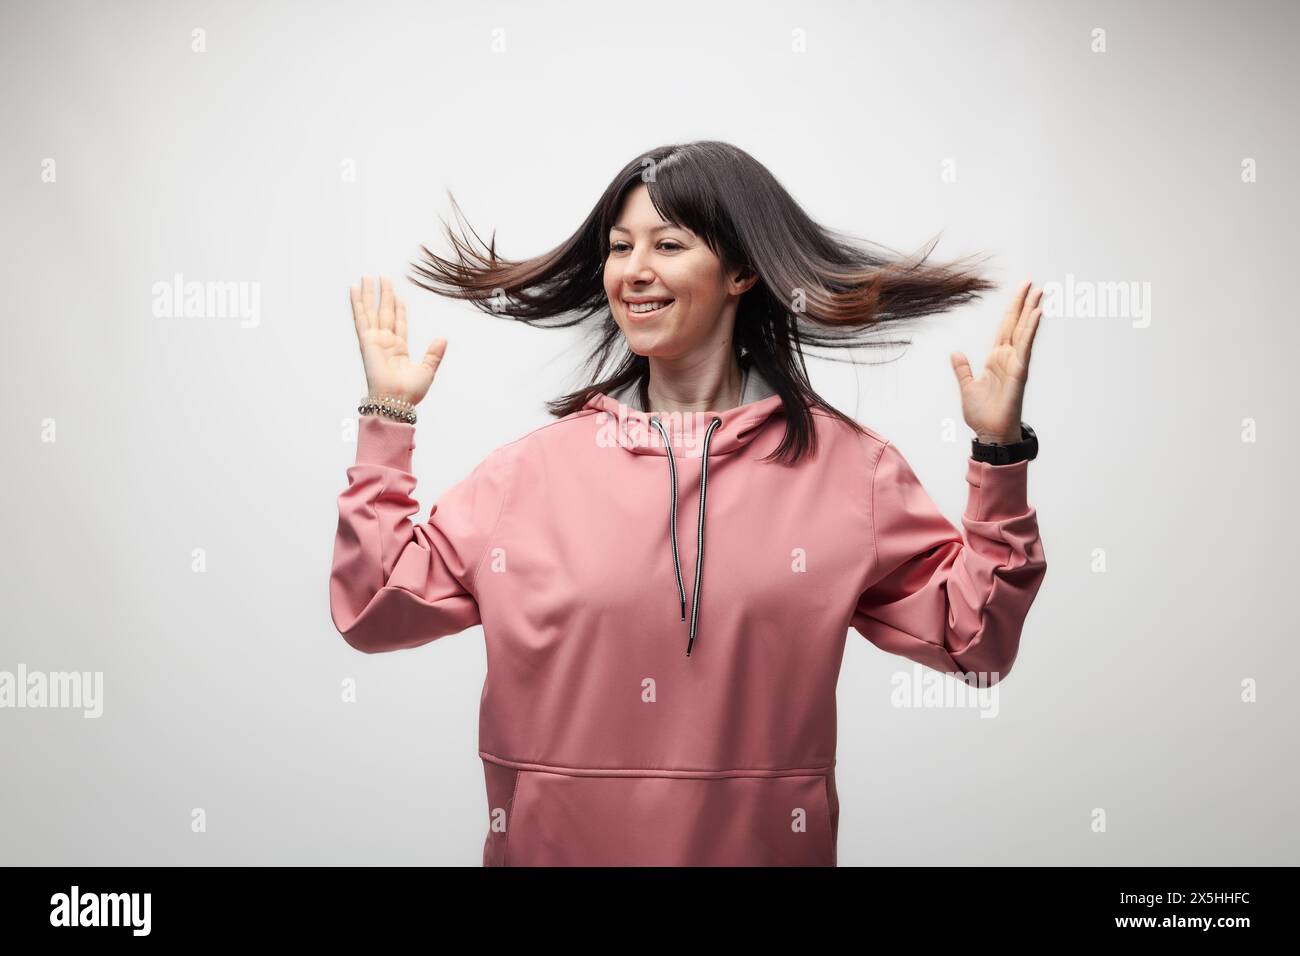 Une jeune femme joyeuse portant un sweat à capuche rose jette joyeusement ses cheveux, exprimant la liberté et le bonheur sur un fond clair. Banque D'Images